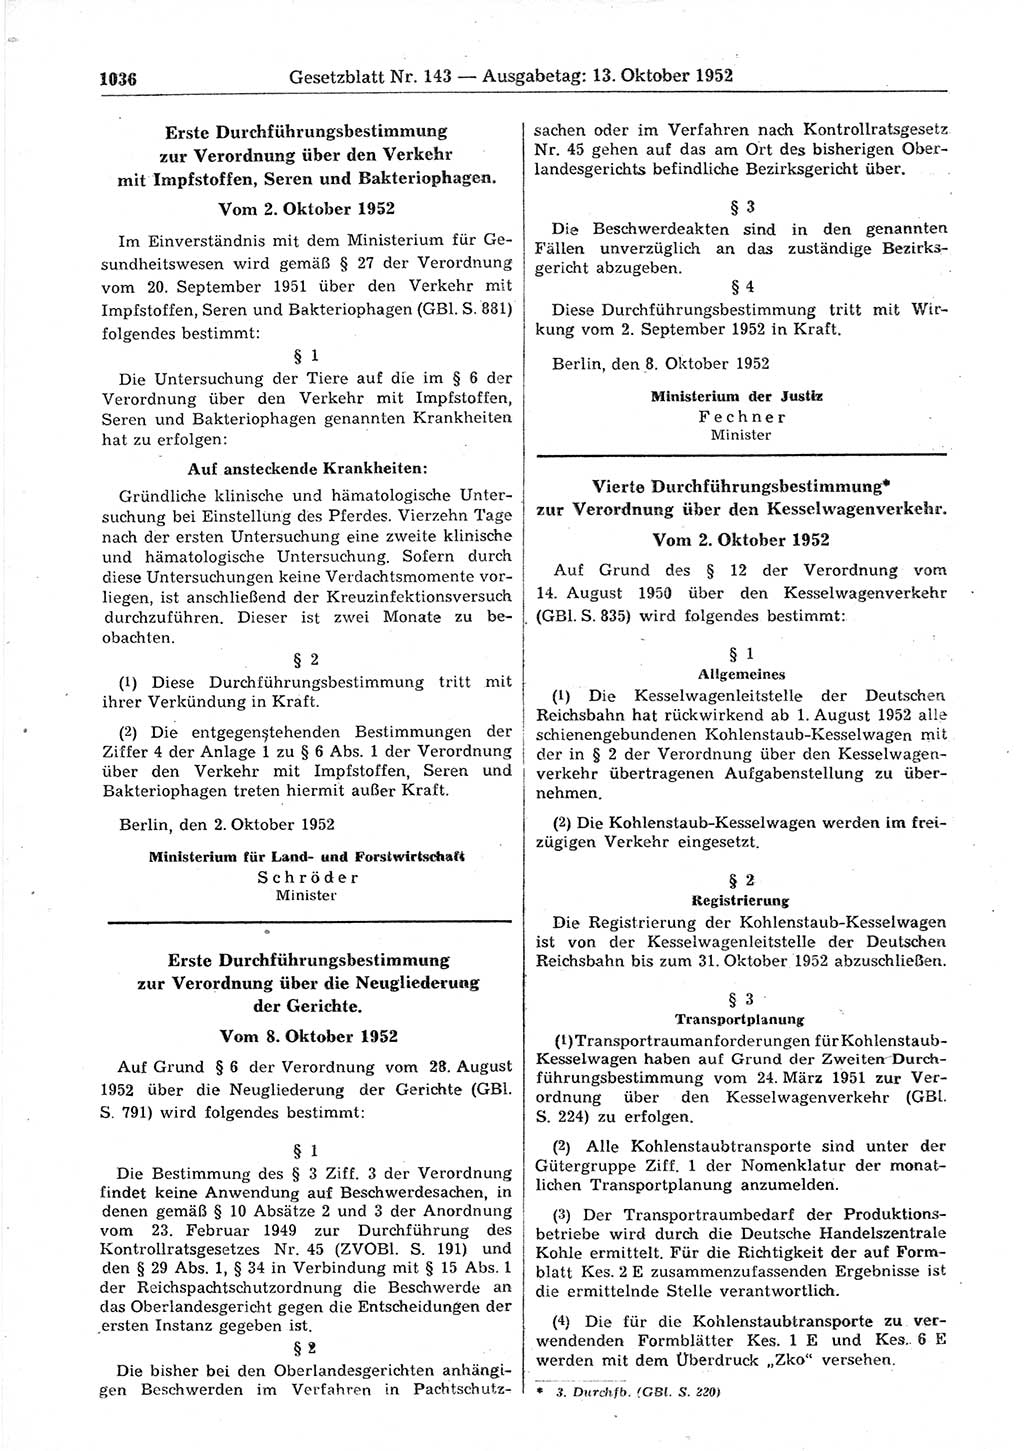 Gesetzblatt (GBl.) der Deutschen Demokratischen Republik (DDR) 1952, Seite 1036 (GBl. DDR 1952, S. 1036)